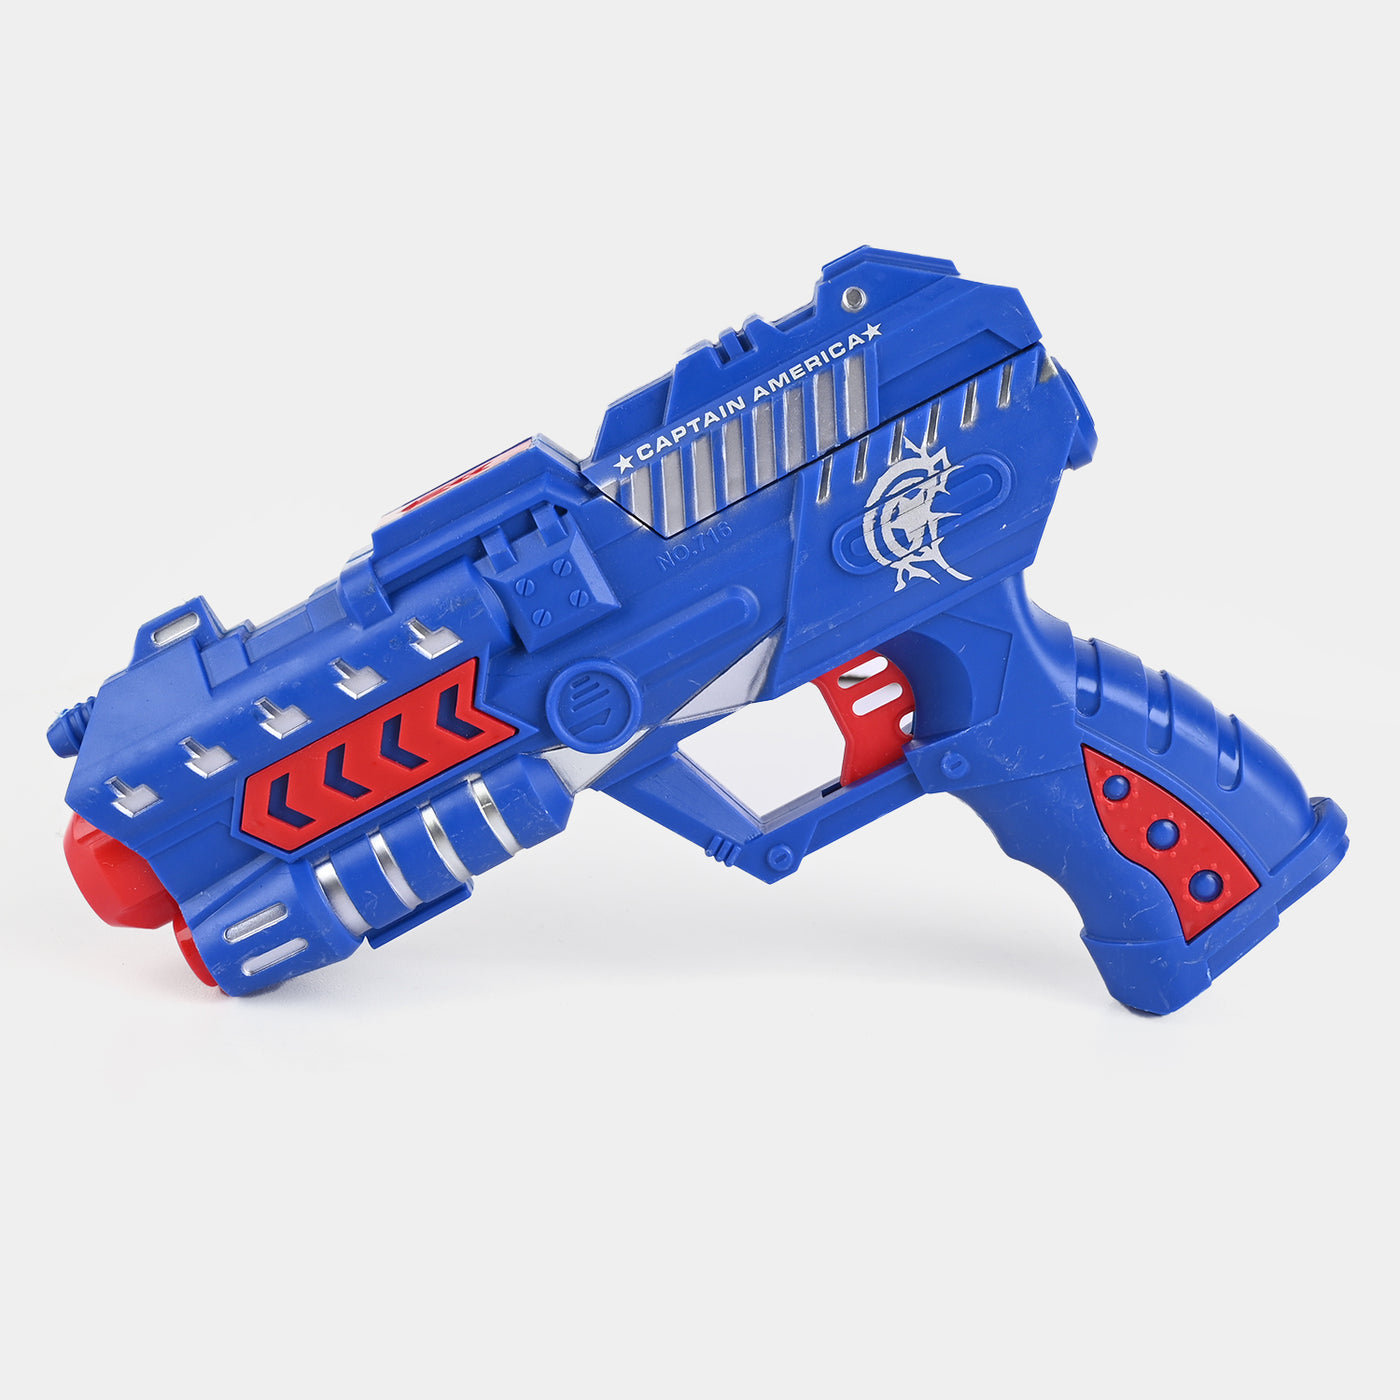 EVA Soft Bullet Gun Toy For Kids